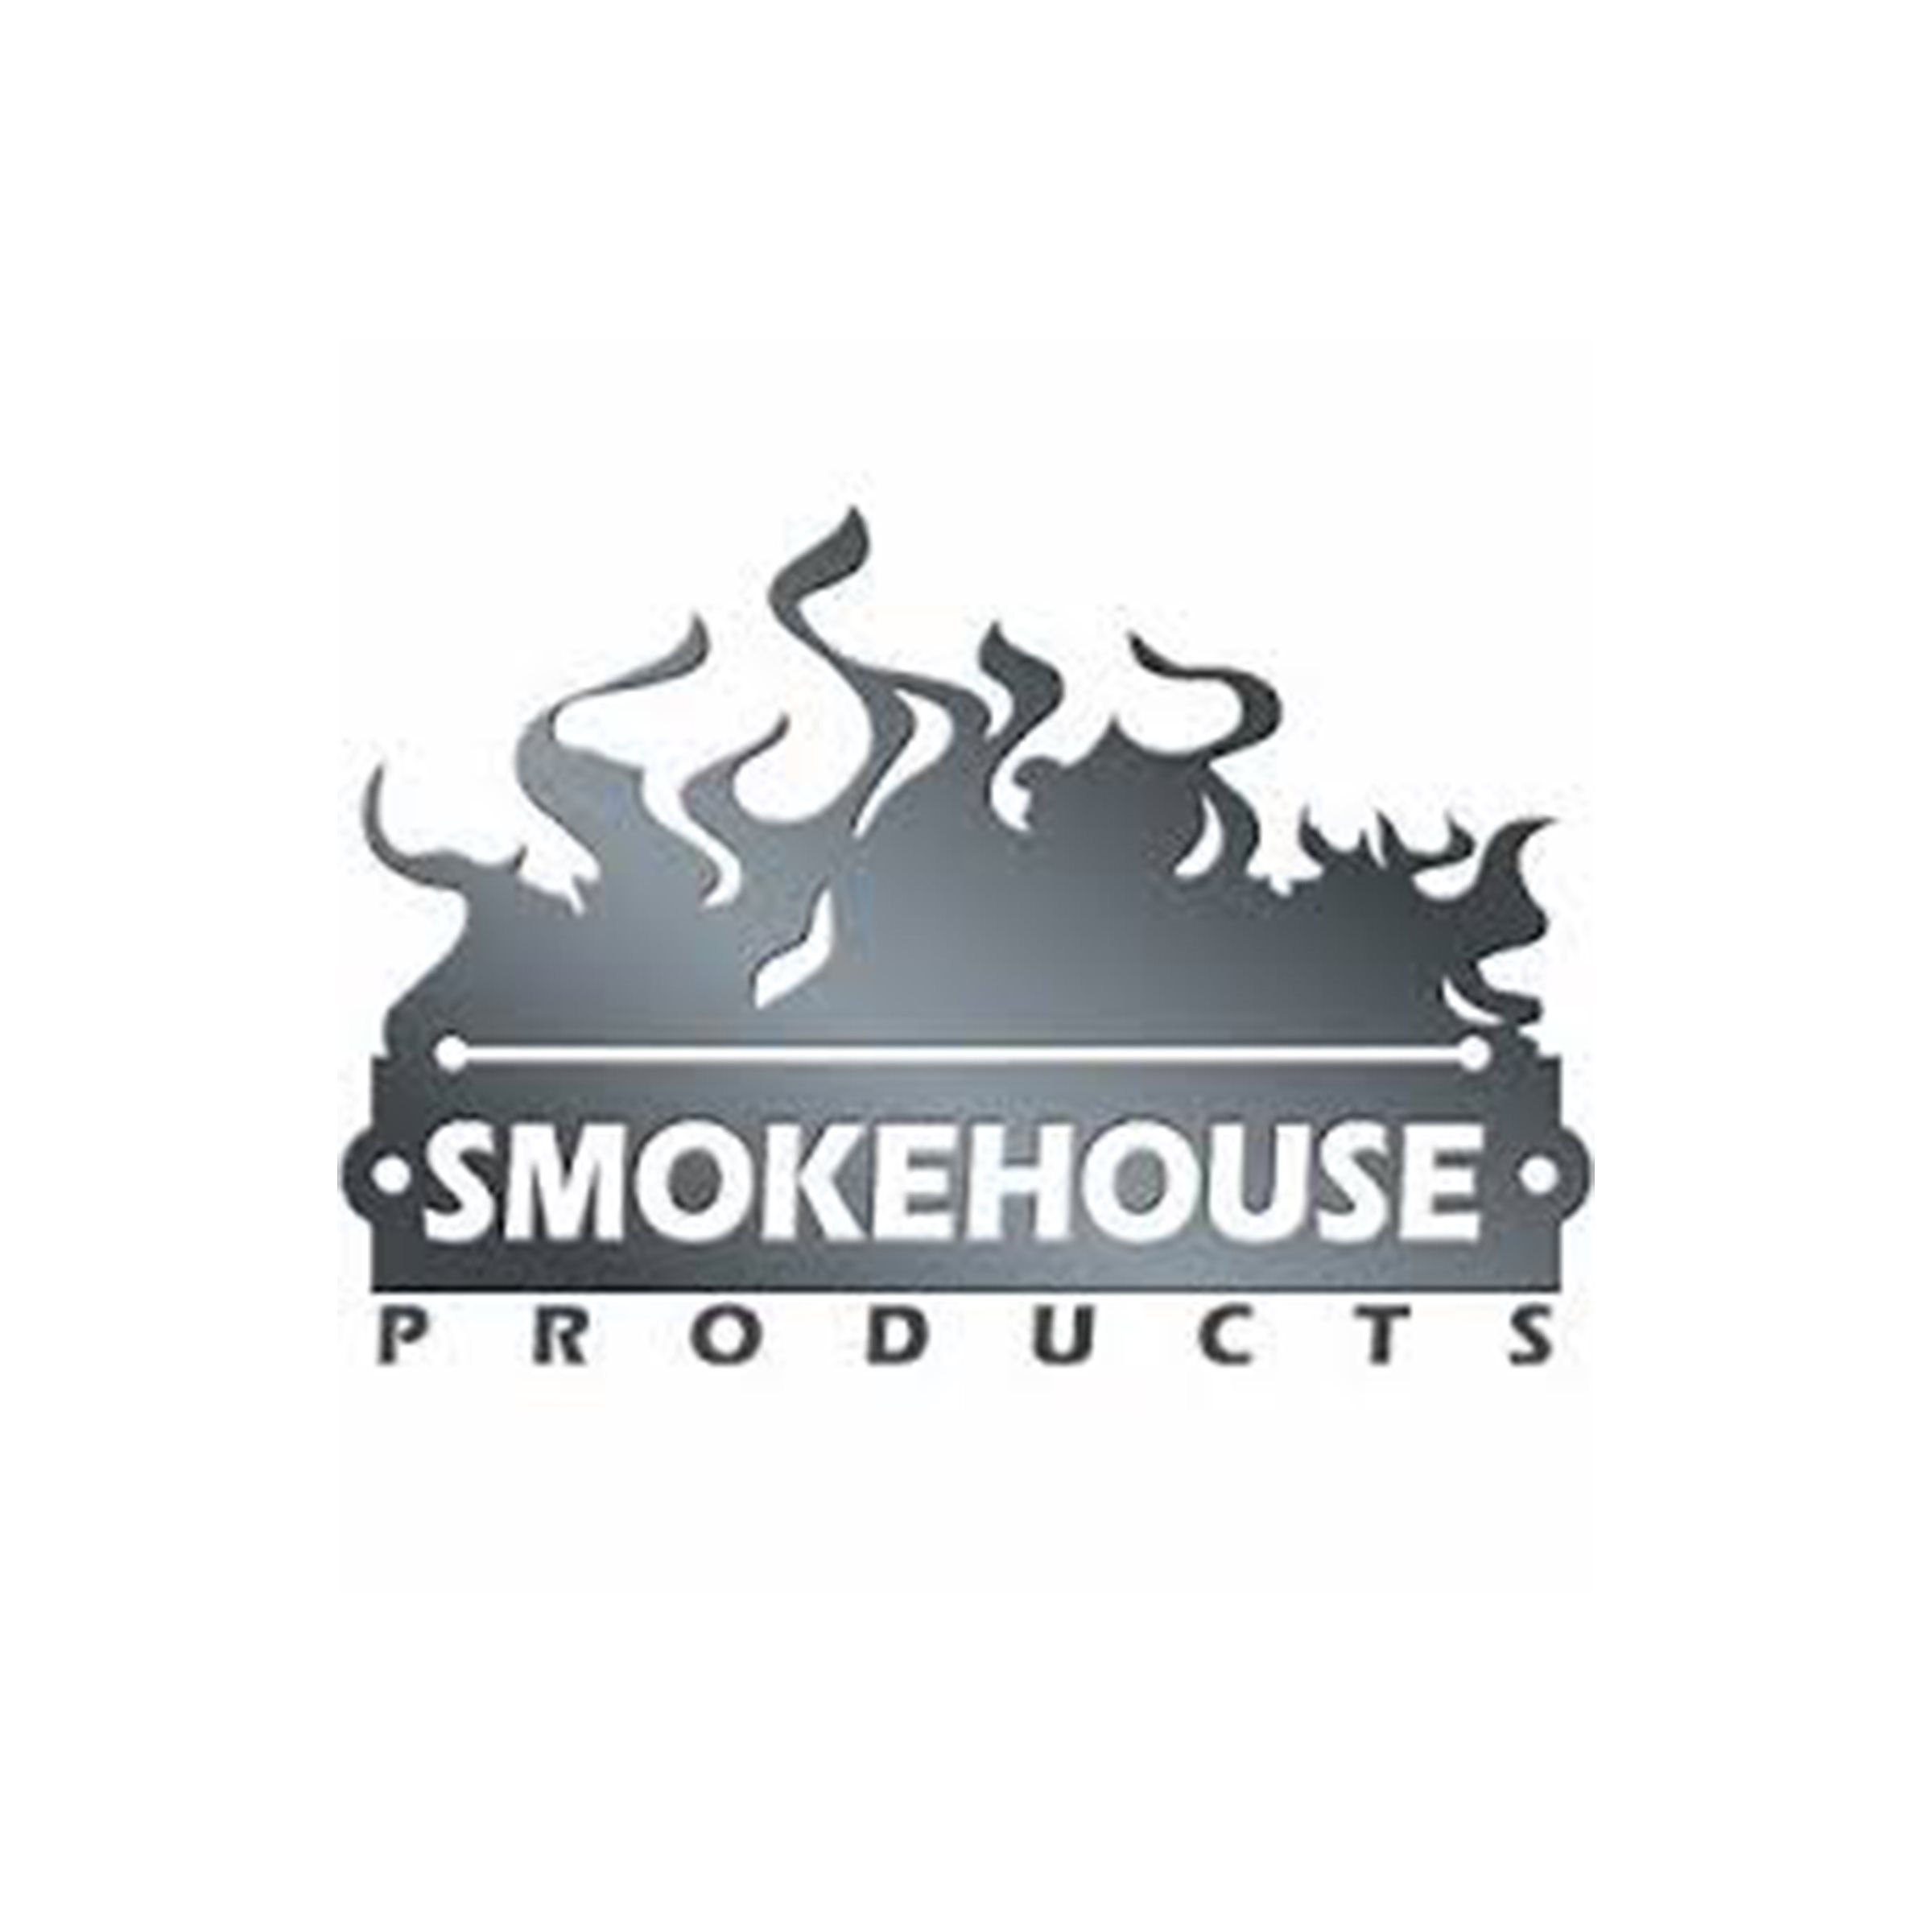 A_Smokehouse